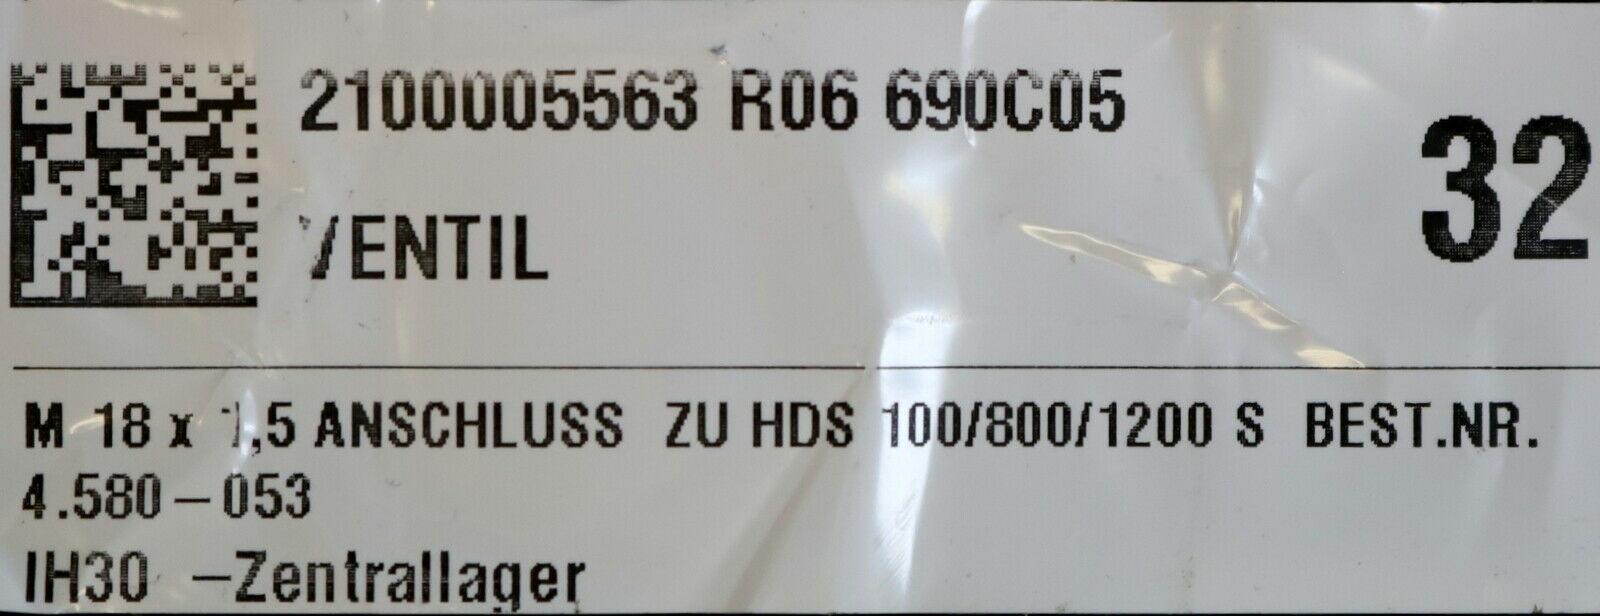 KÄRCHER Ventil 4.580-053.0 Anschluss zu HDS 100/800/1200S M18x1,5 - unbenutzt